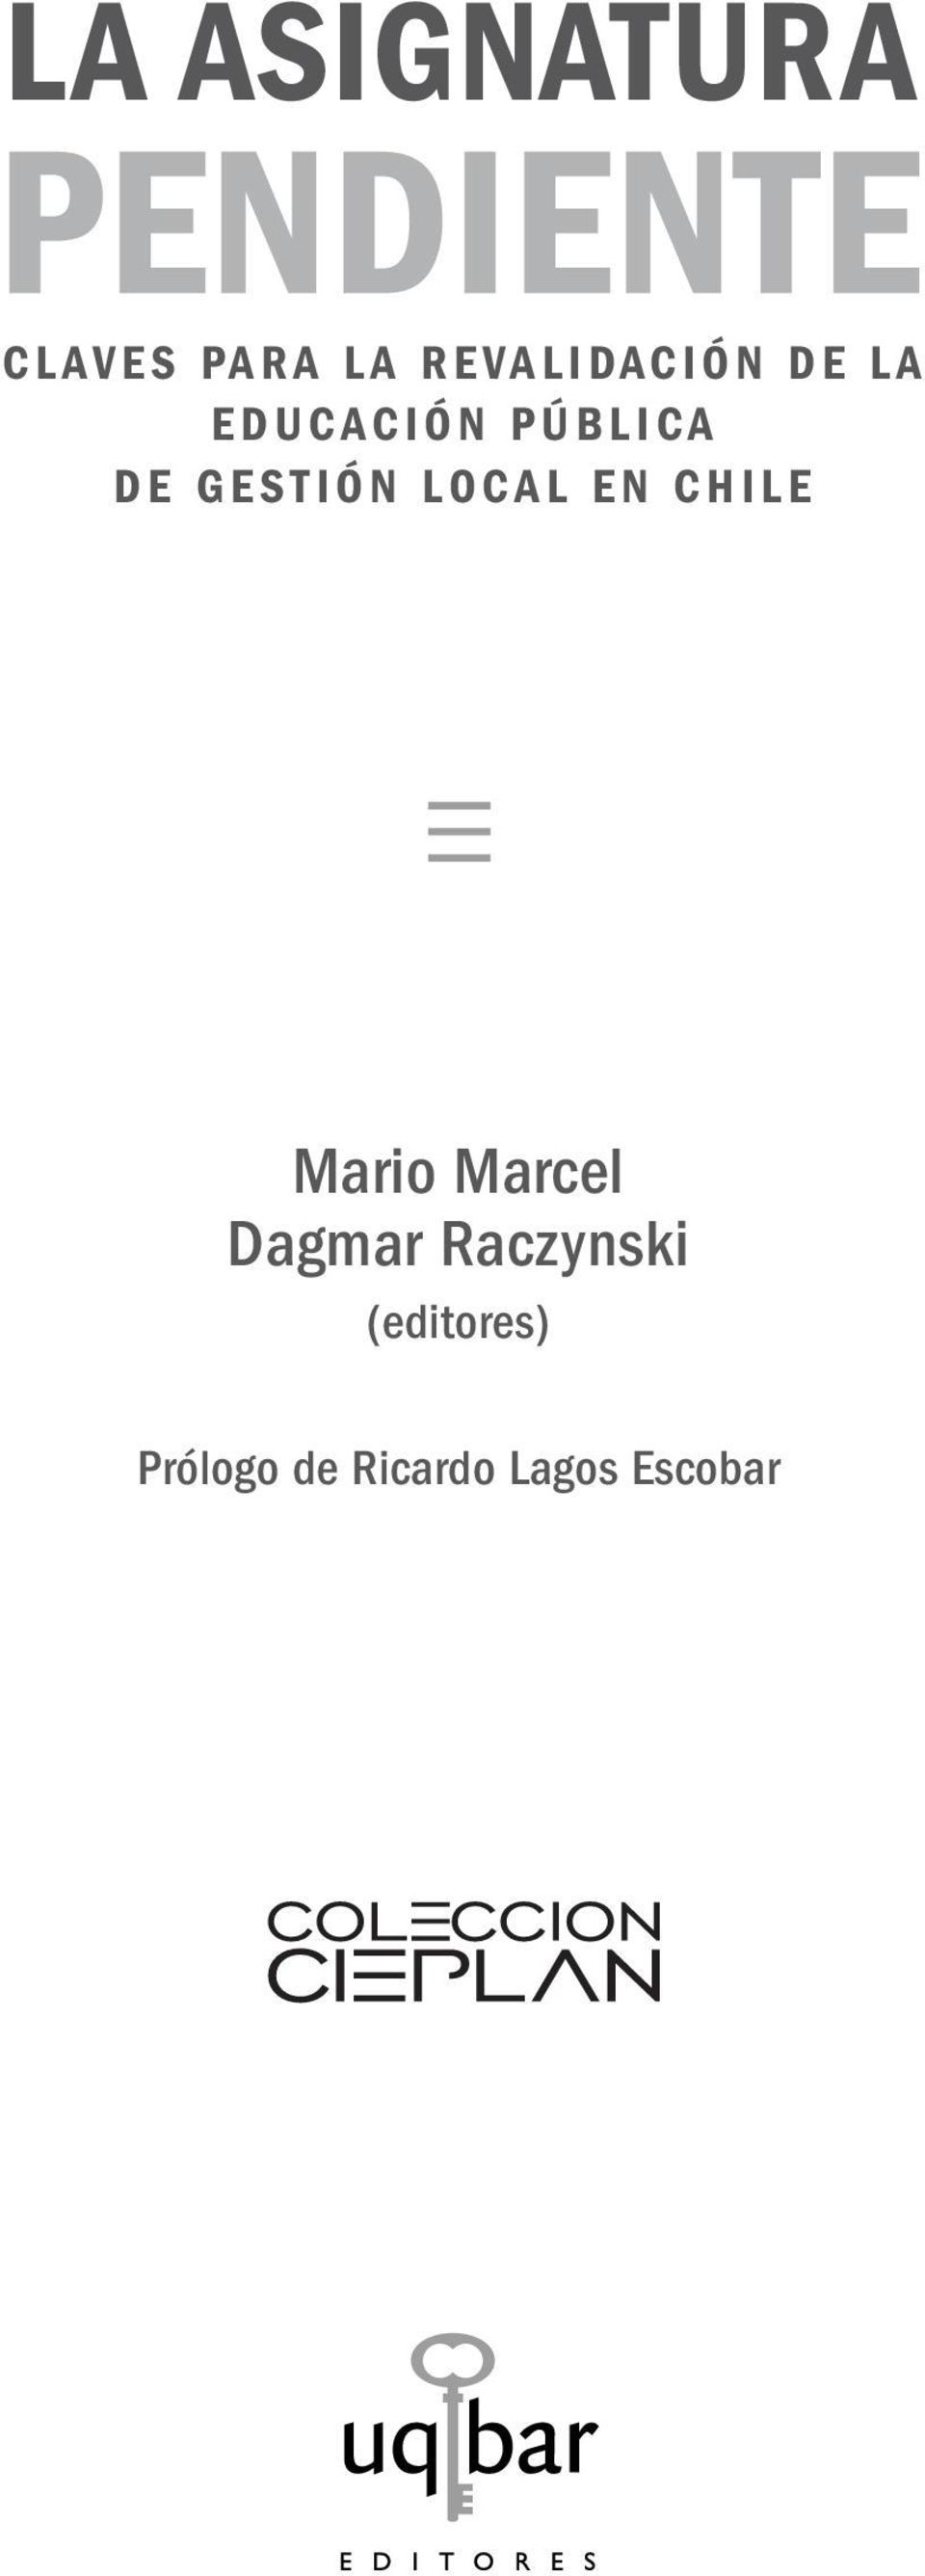 EN CHILE Mario Marcel Dagmar Raczynski